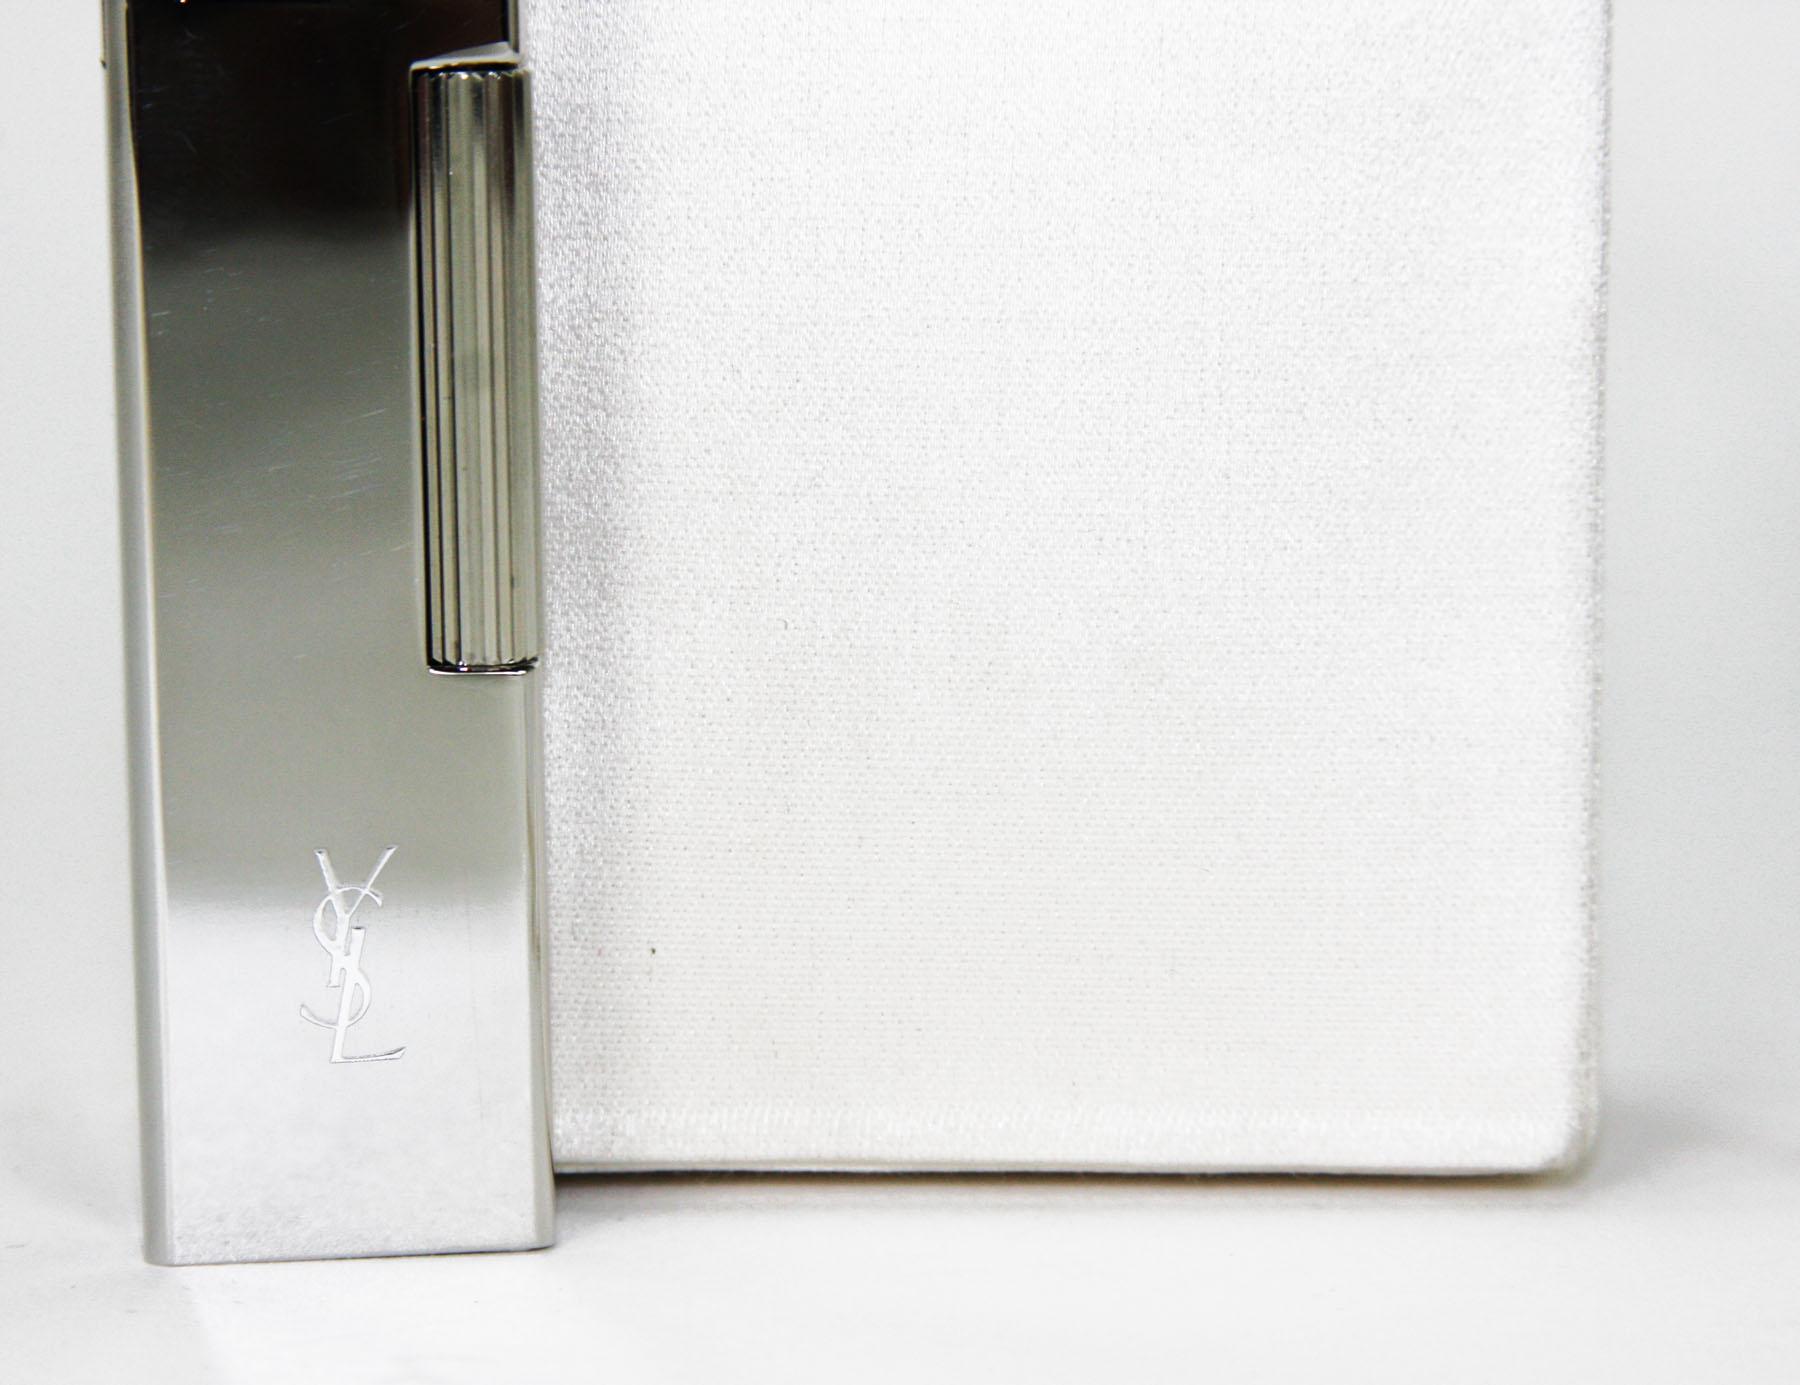 New Tom Ford for Yves Saint Laurent S/S 2001 Silk Cigarette Case and Lighter 2